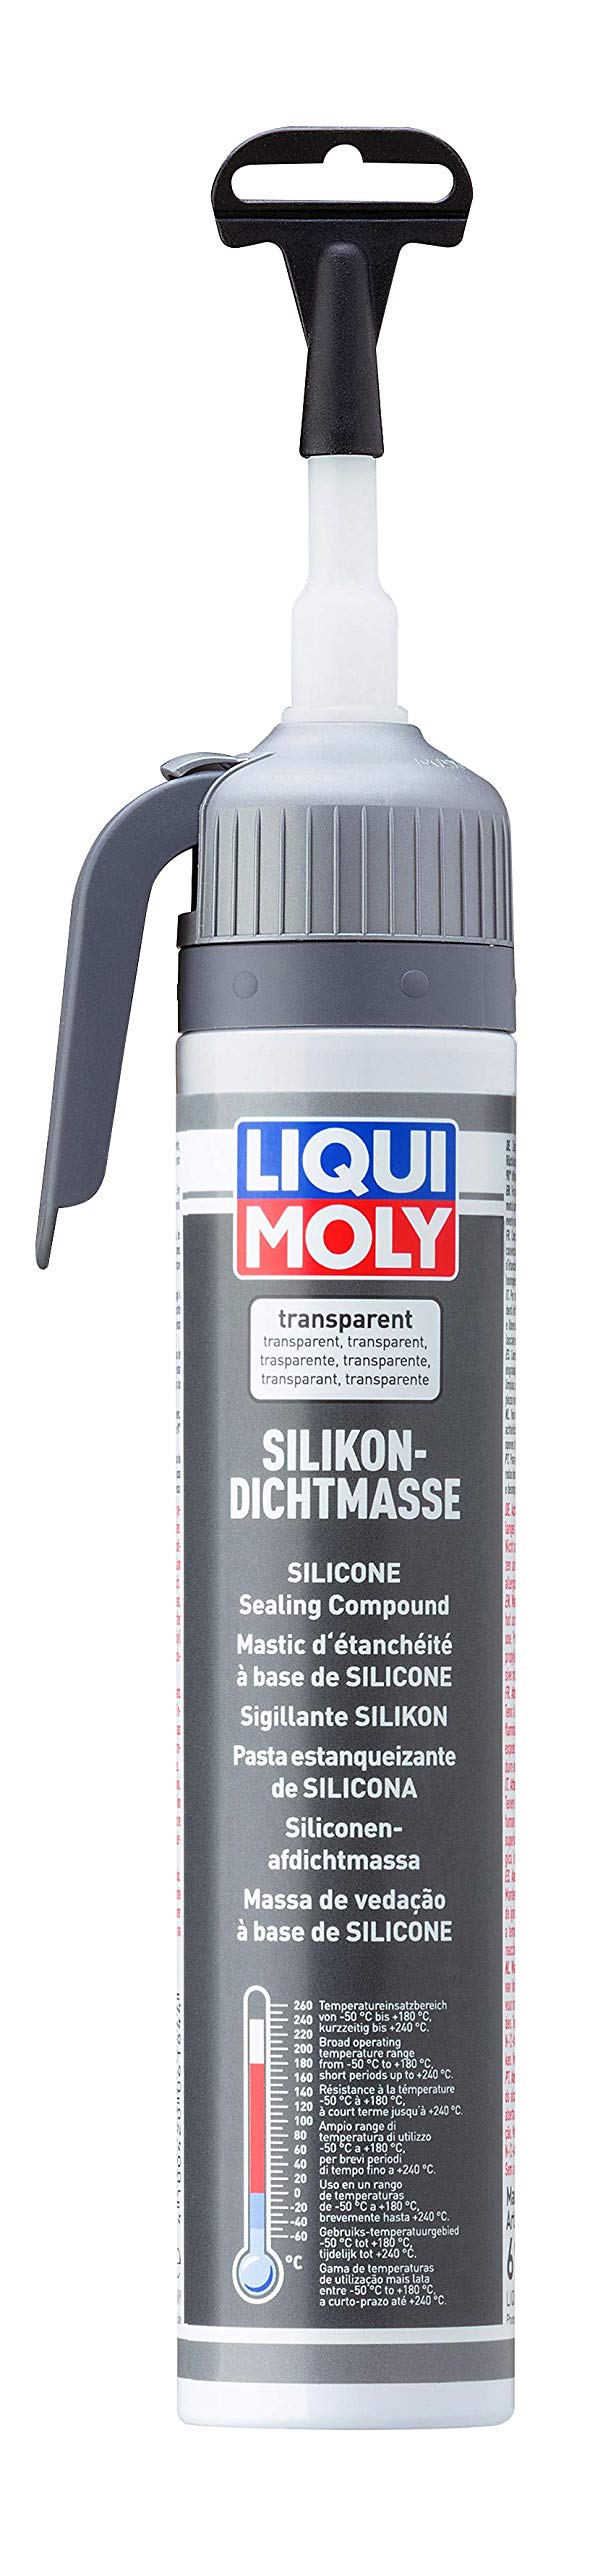 LIQUI MOLY Silikondichtmasse transparent | 200 ml | Karosserieschutz | Dichtstoff | Unterbodenschutz | Art.-Nr.: 6184 von Liqui Moly